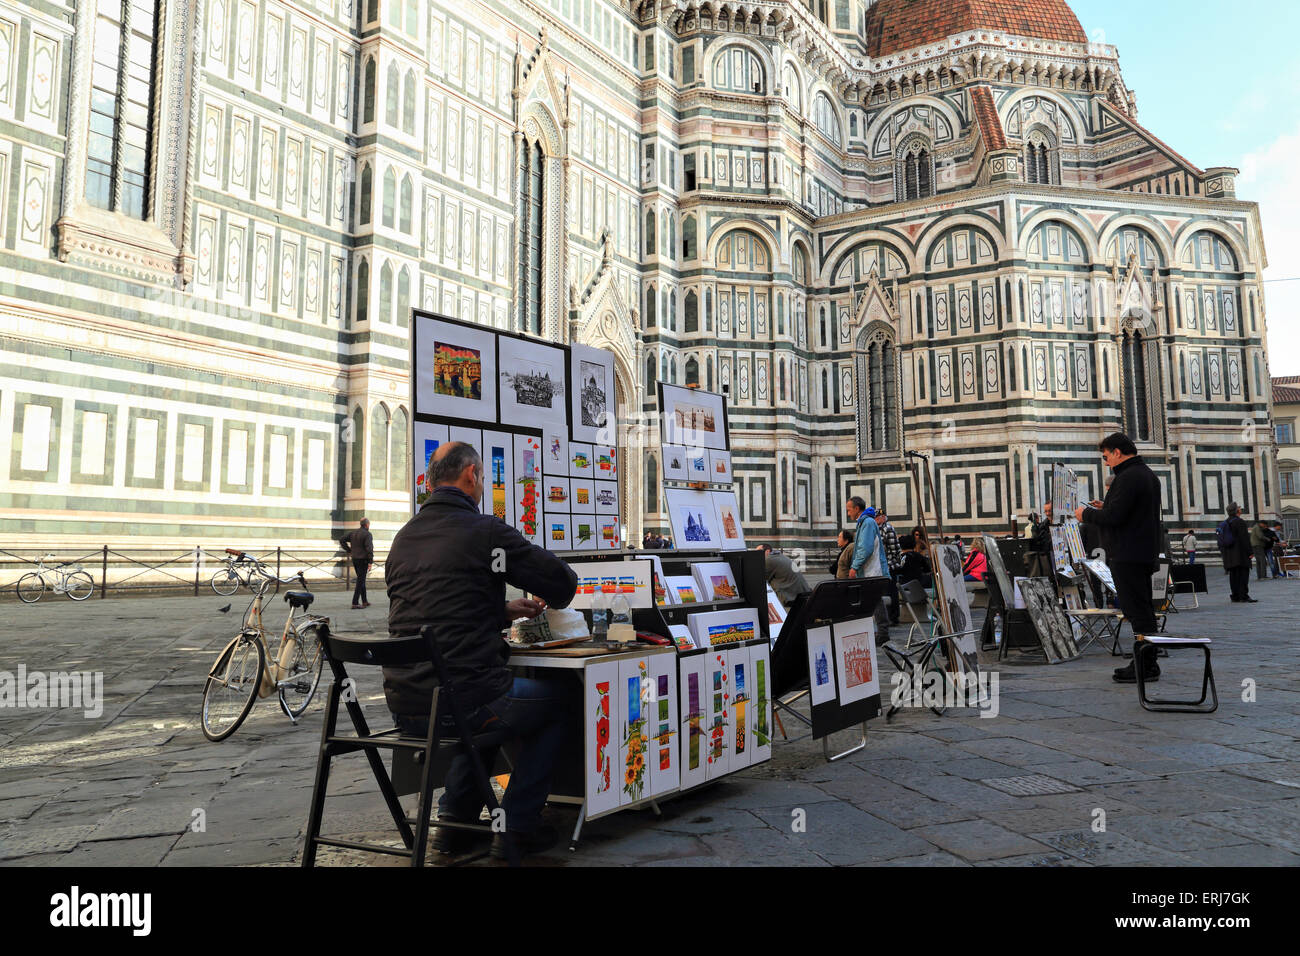 Los artistas callejeros en la Catedral de Santa Maria del Fiore, Florencia. Foto de stock